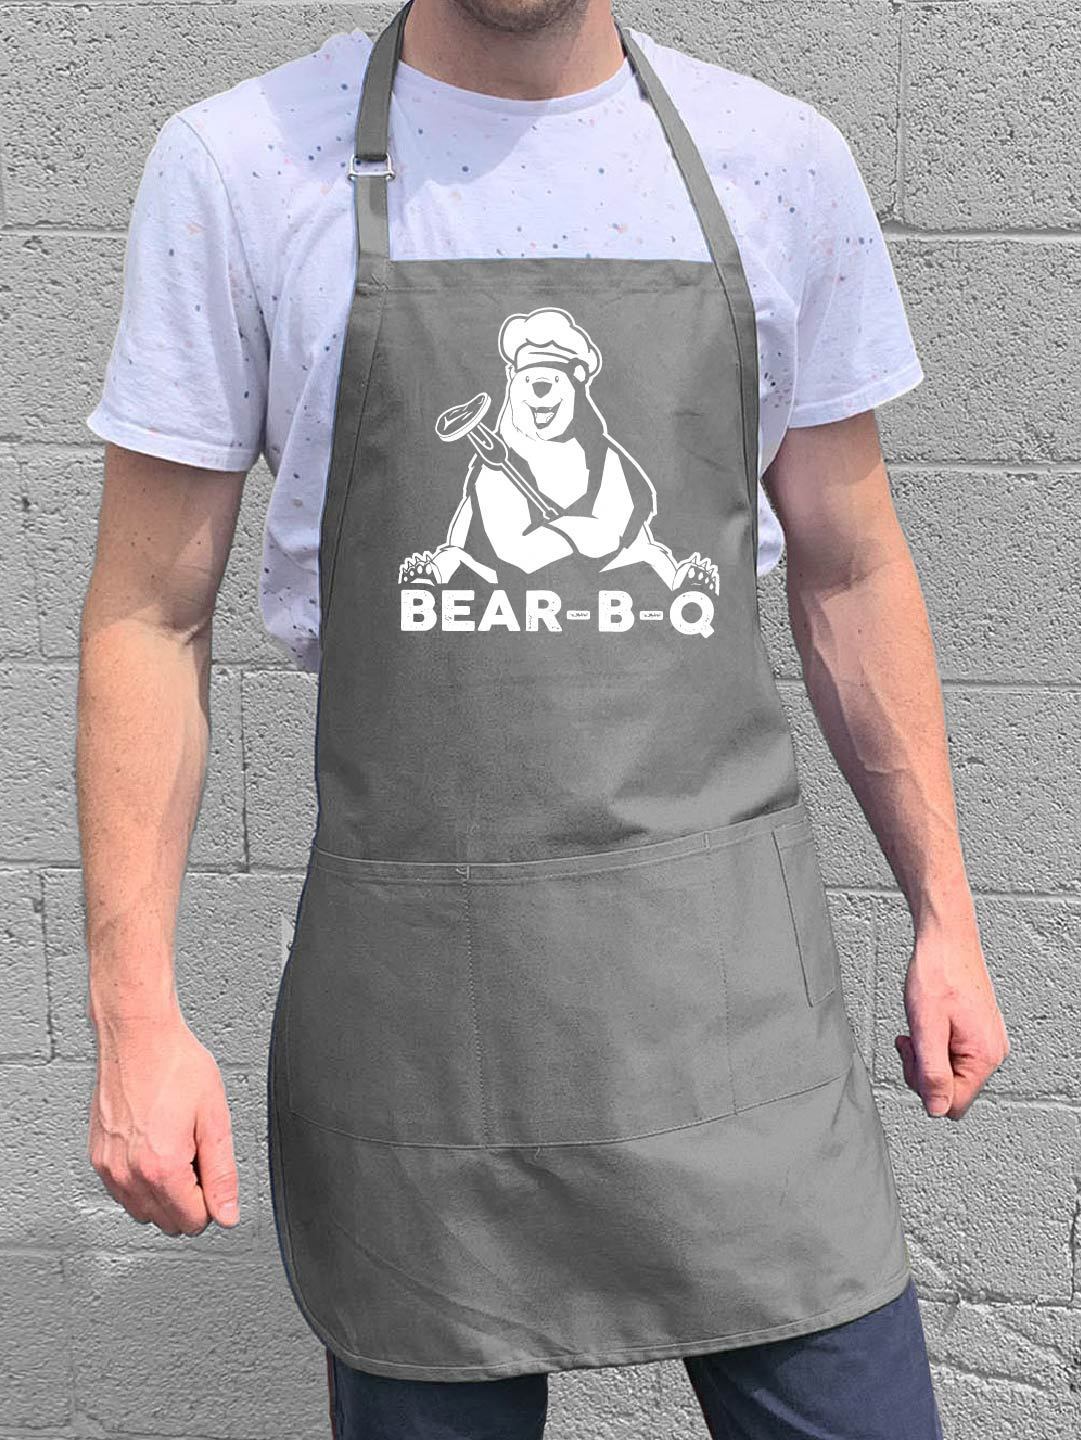 Bear-B-Q - Funny Men's BBQ Apron - 100% Cotton | ApronMen.com